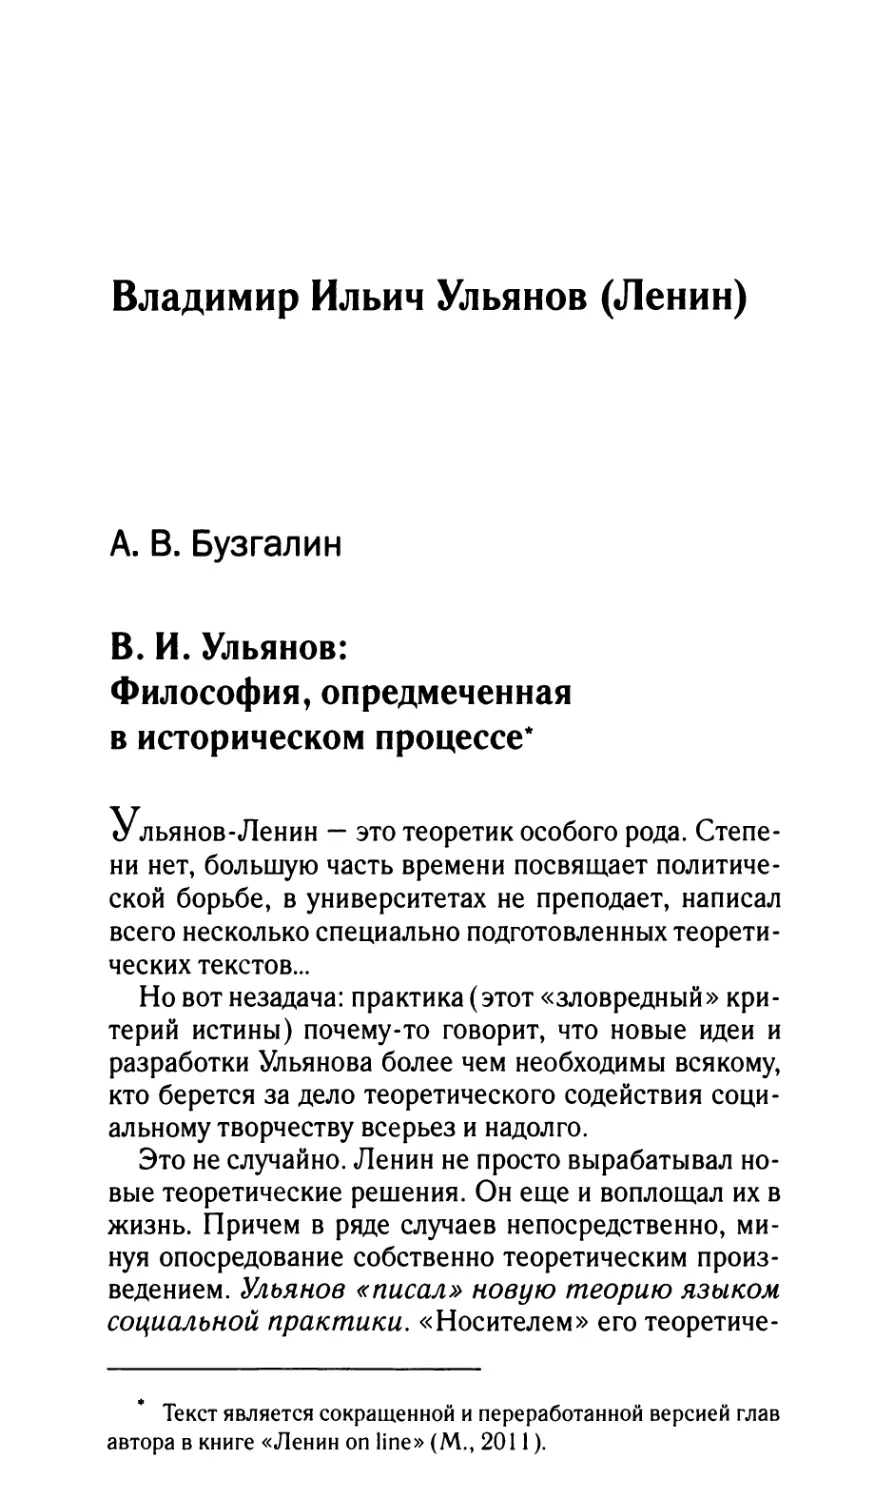 Бузгалин А.В. В.И. Ульянов: Философия, опредмеченная в историческом процессе